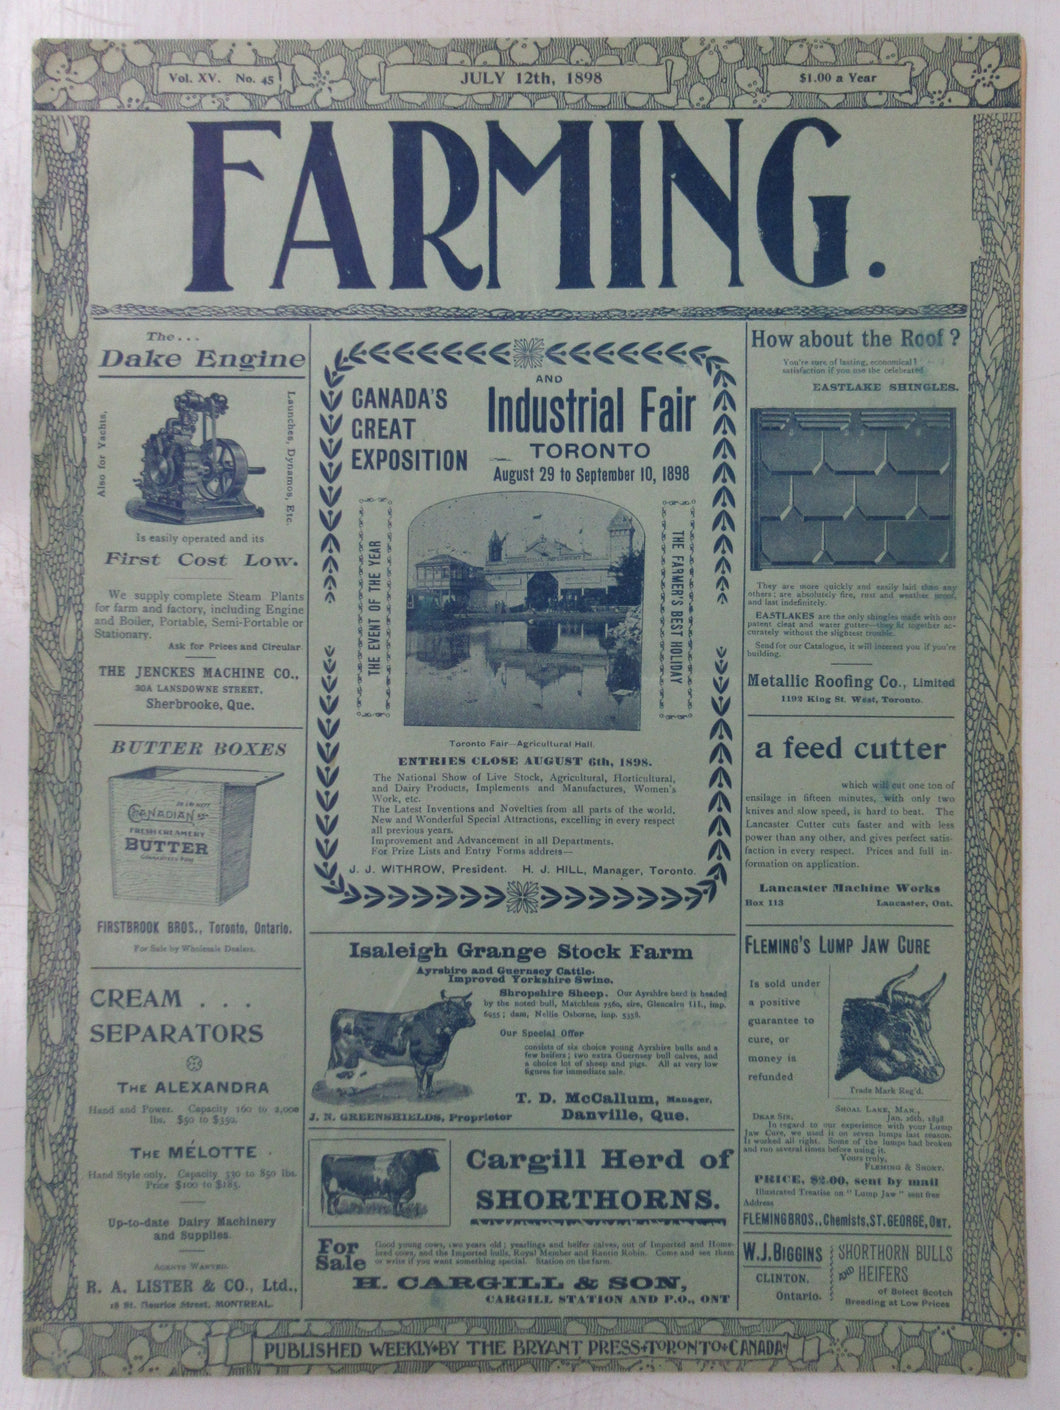 Farming, July 12th, 1898